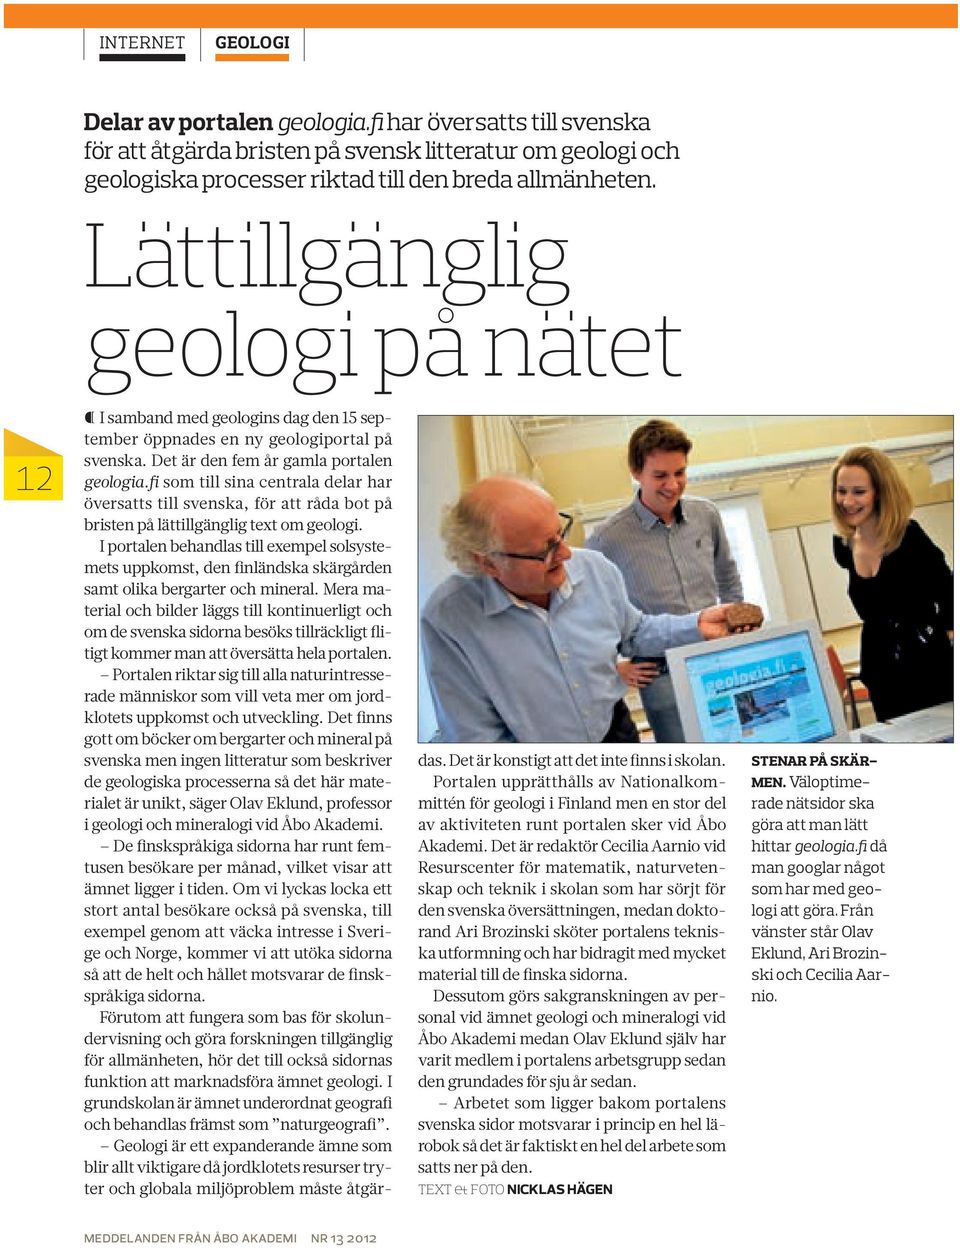 fi som till sina centrala delar har översatts till svenska, för att råda bot på bristen på lättillgänglig text om geologi.